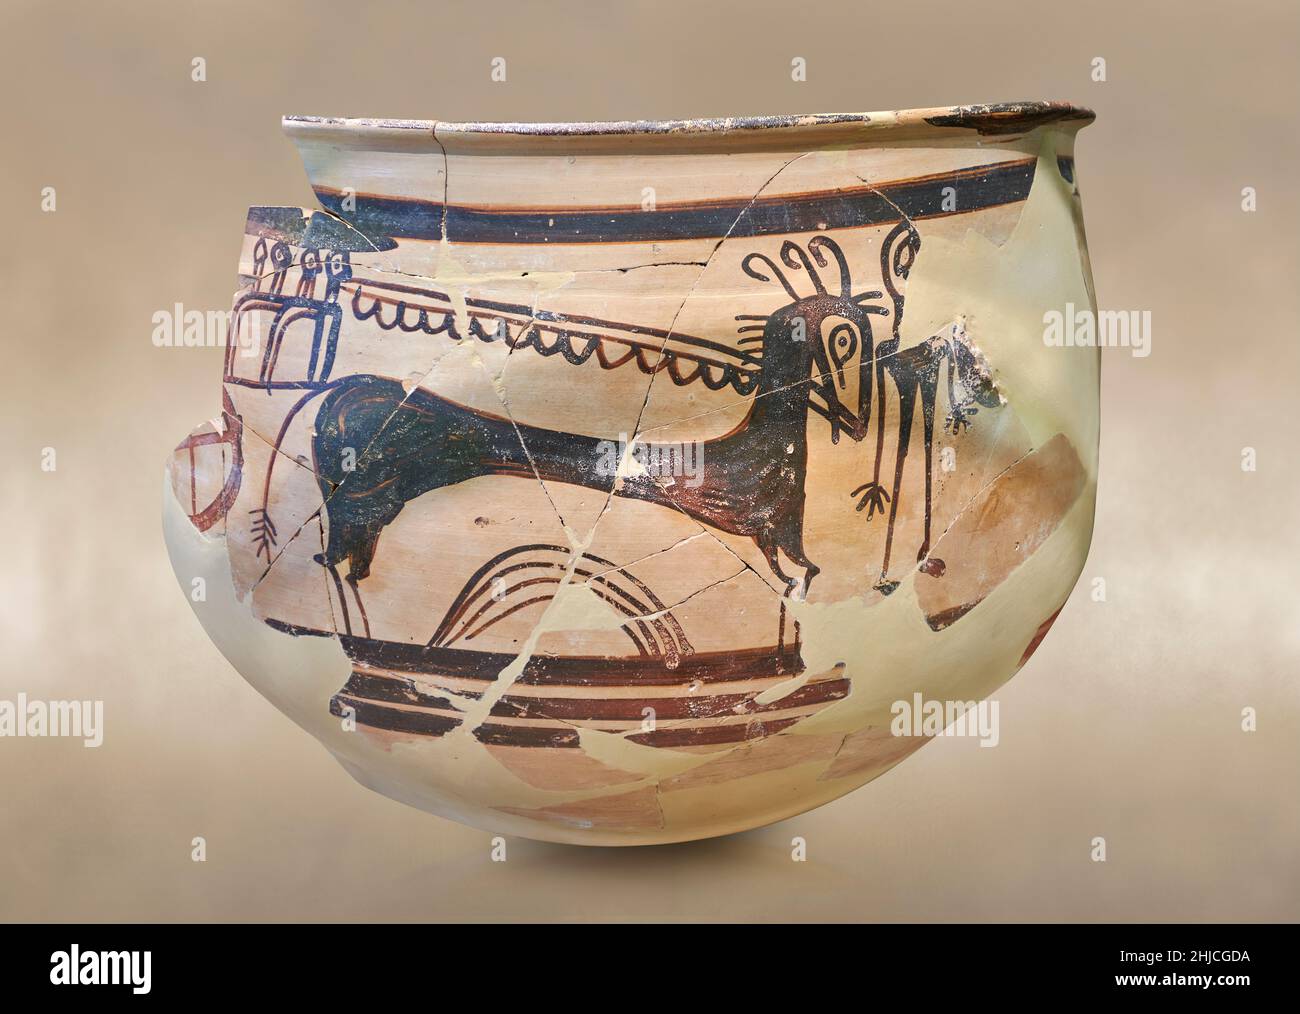 Mykenische Keramik - Kraterfragment, das eine Pferd- und Wagenszene darstellt, Tiryns, 1400-1300 v. Chr. Archäologisches Museum Nafplion. Gegen grauen Kunstrückstand Stockfoto